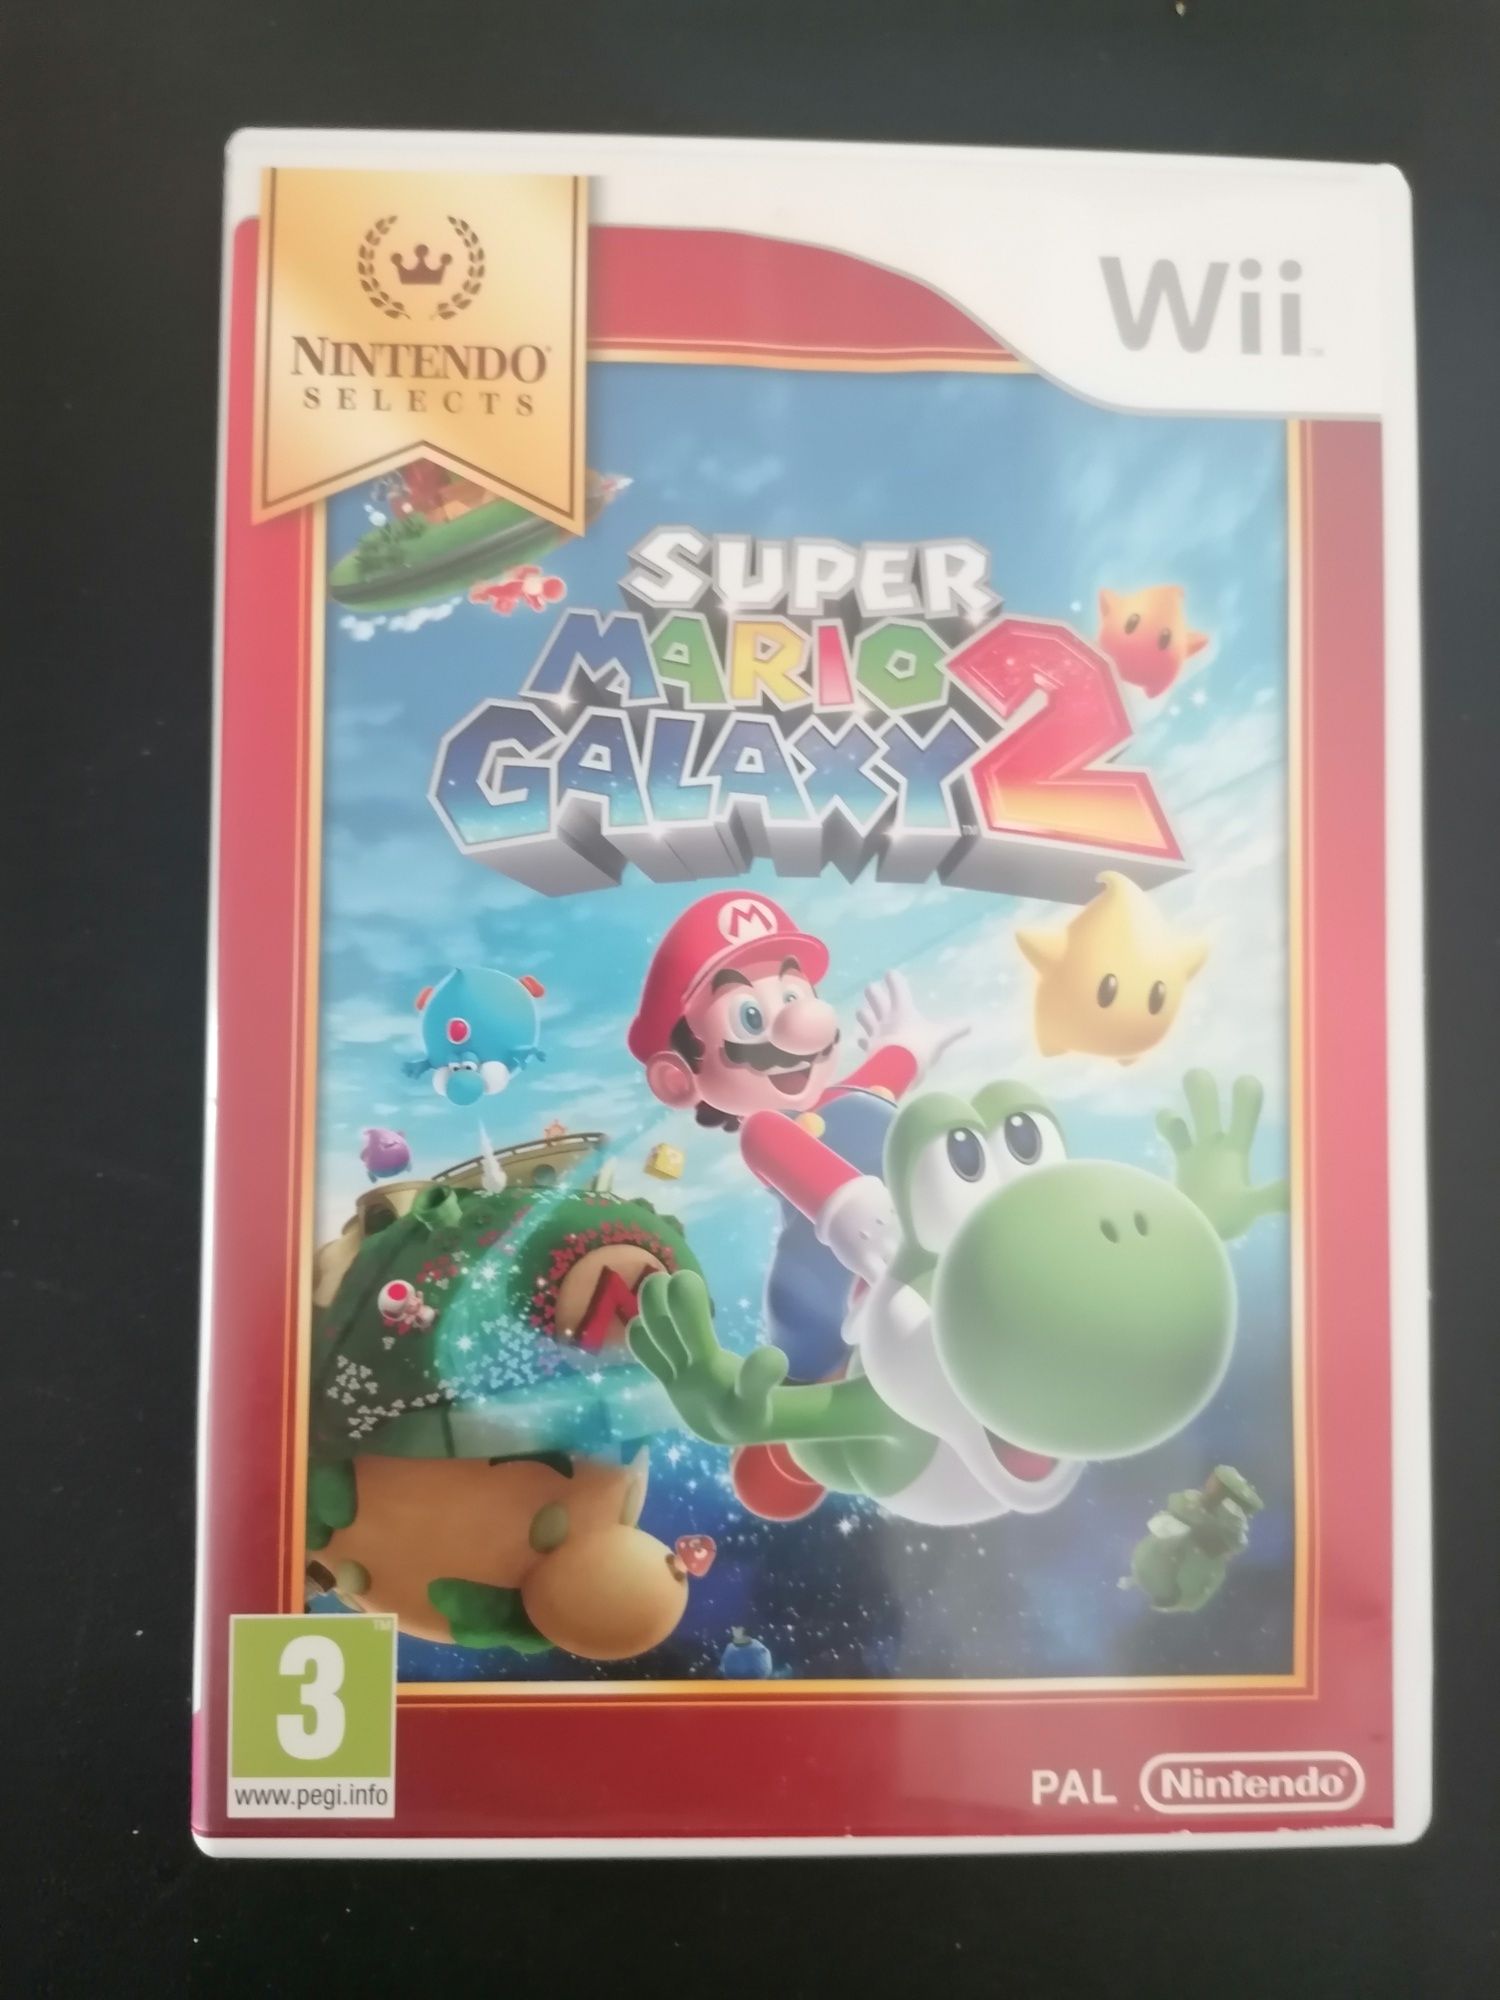 Super mario galaxy 2 - Nintendo wii